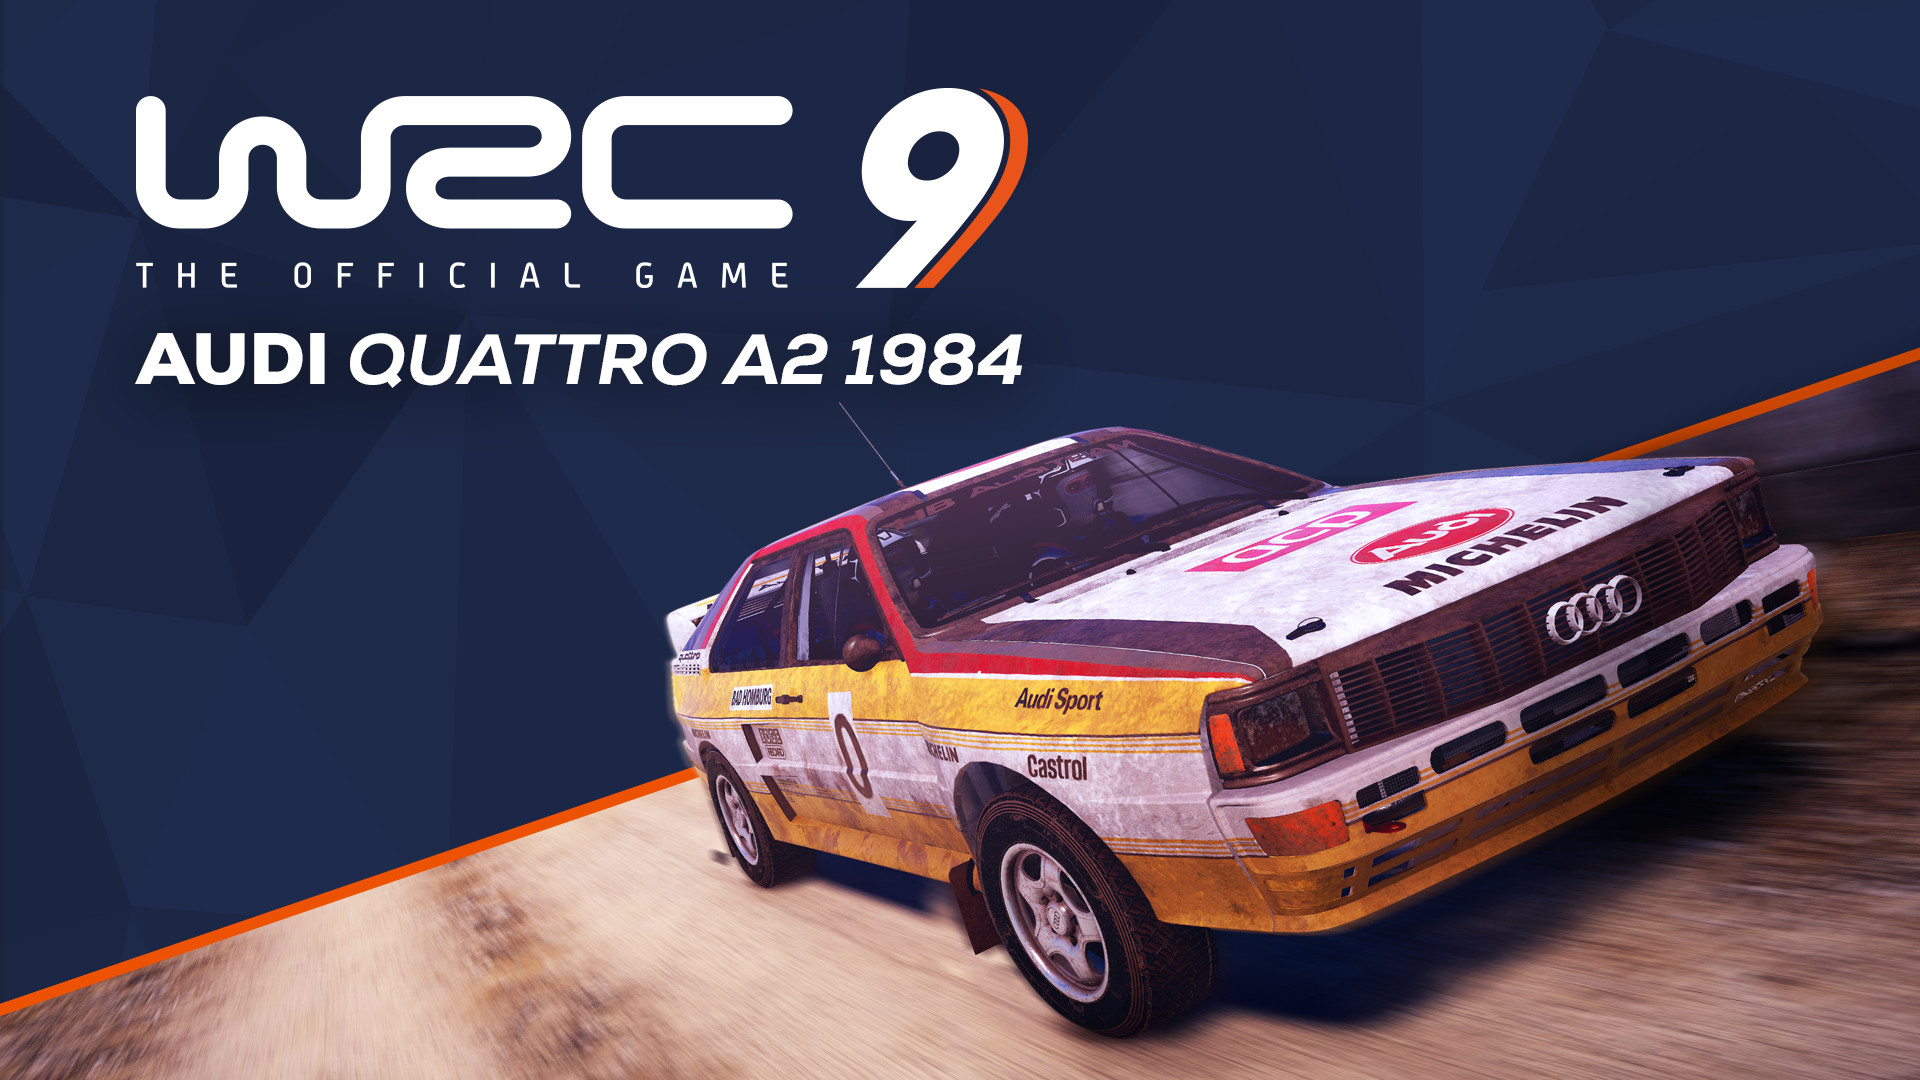 WRC 9 - Audi Quattro A2 1984 DLC Steam CD Key, 1.83 usd